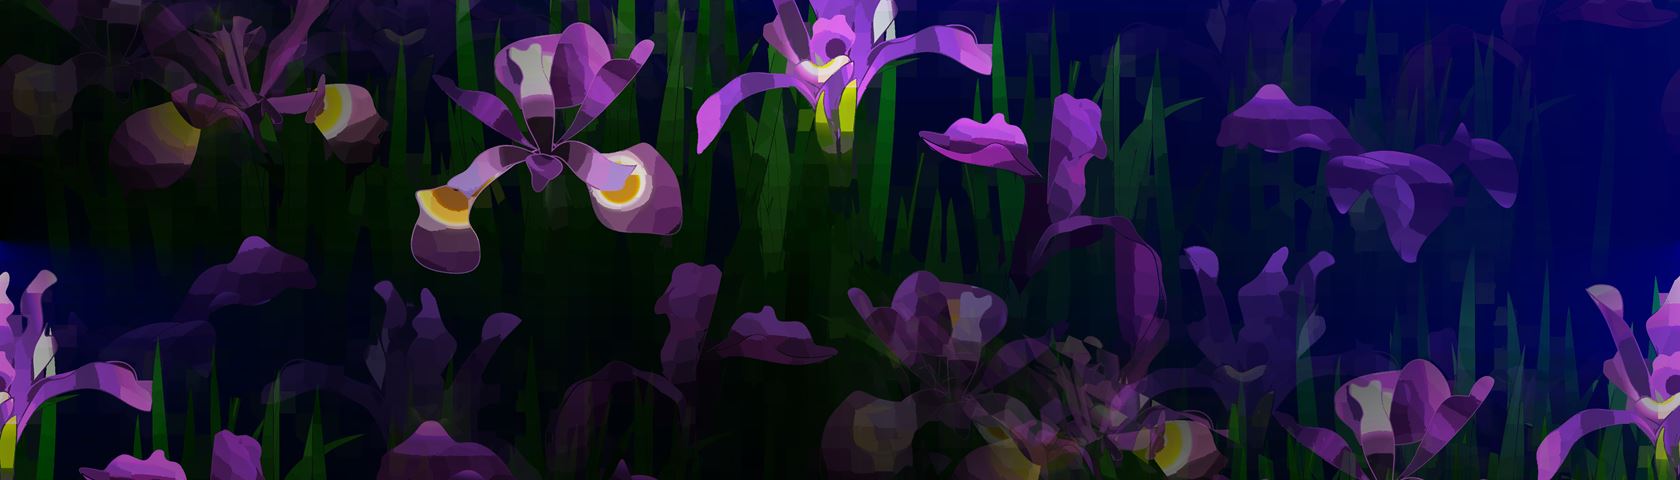 Iris Illusion